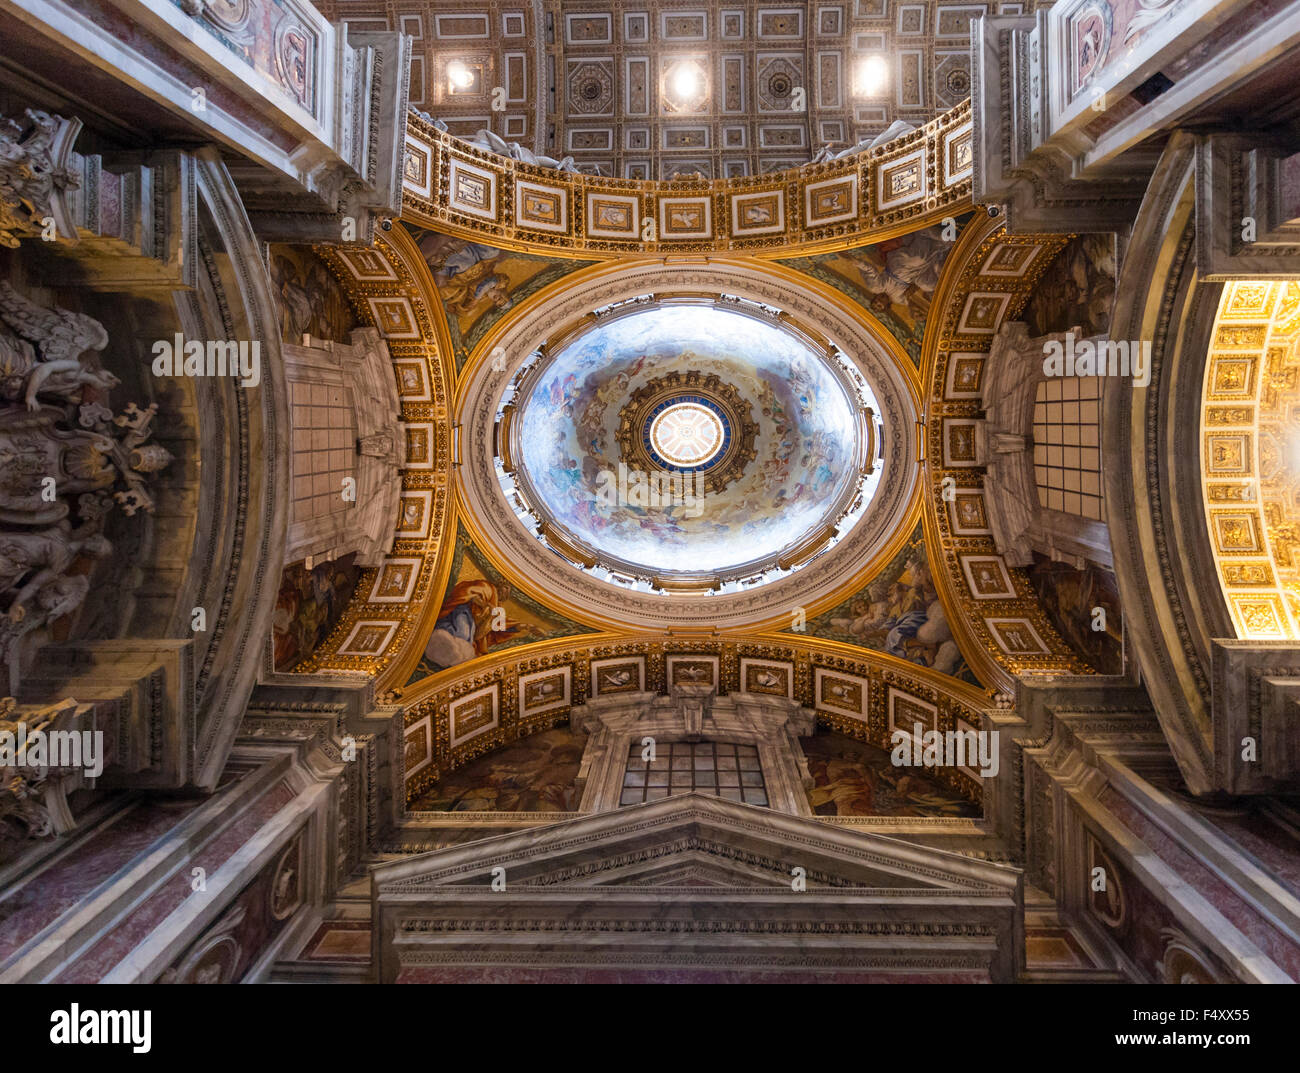 Innenraum der Basilika von St. Peter, Vatikan: Haupt Kuppel über dem Altarraum, von unten gesehen Stockfoto